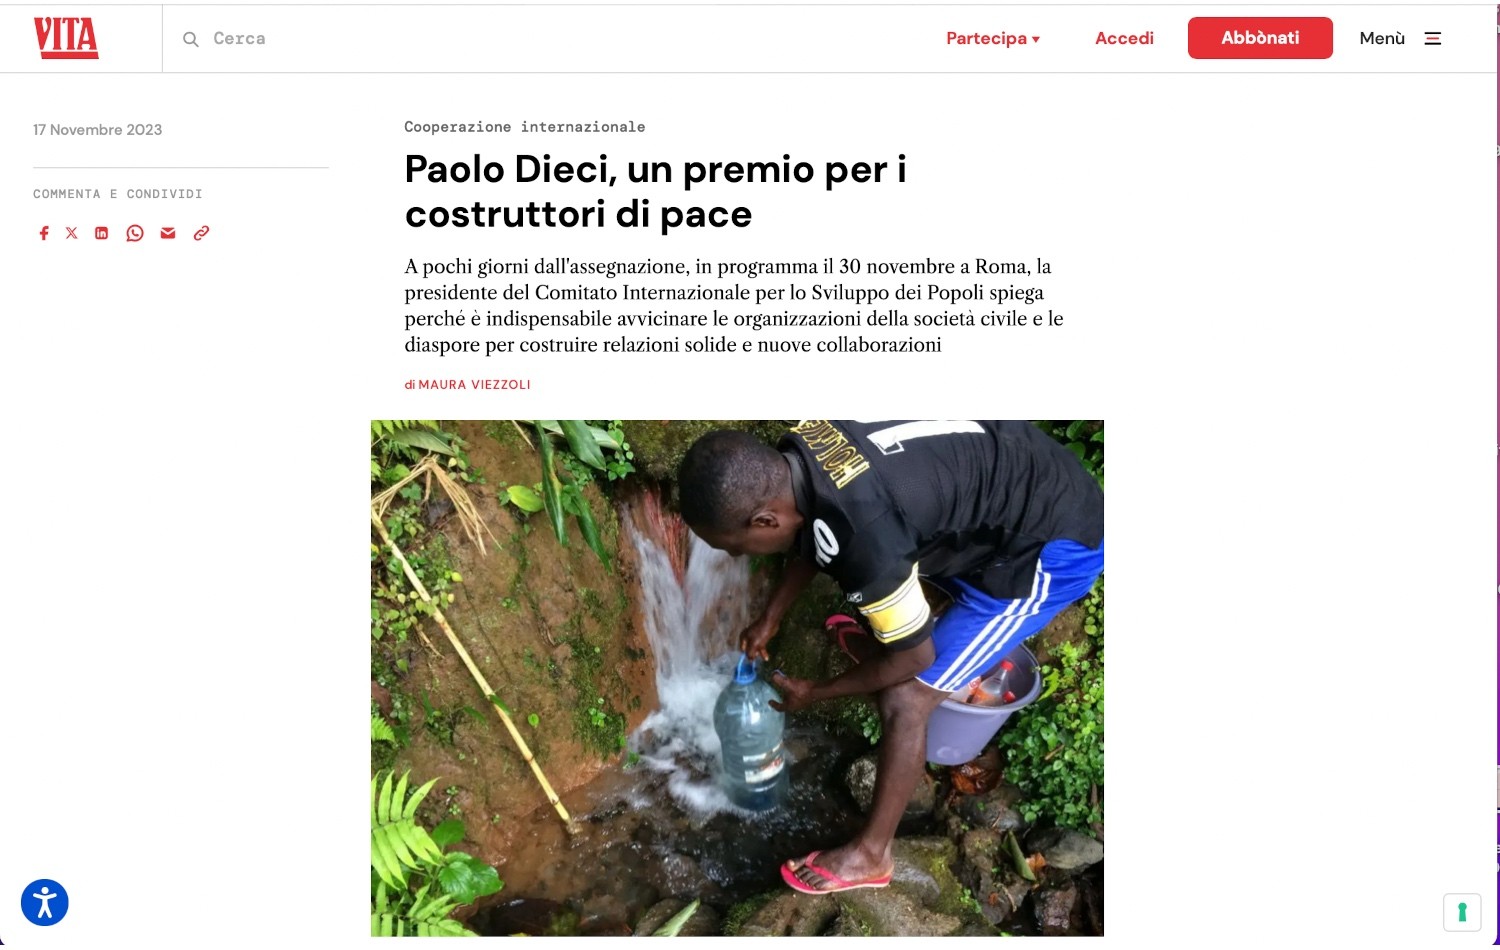 Paolo Dieci, un premio per i costruttori di pace Image 1